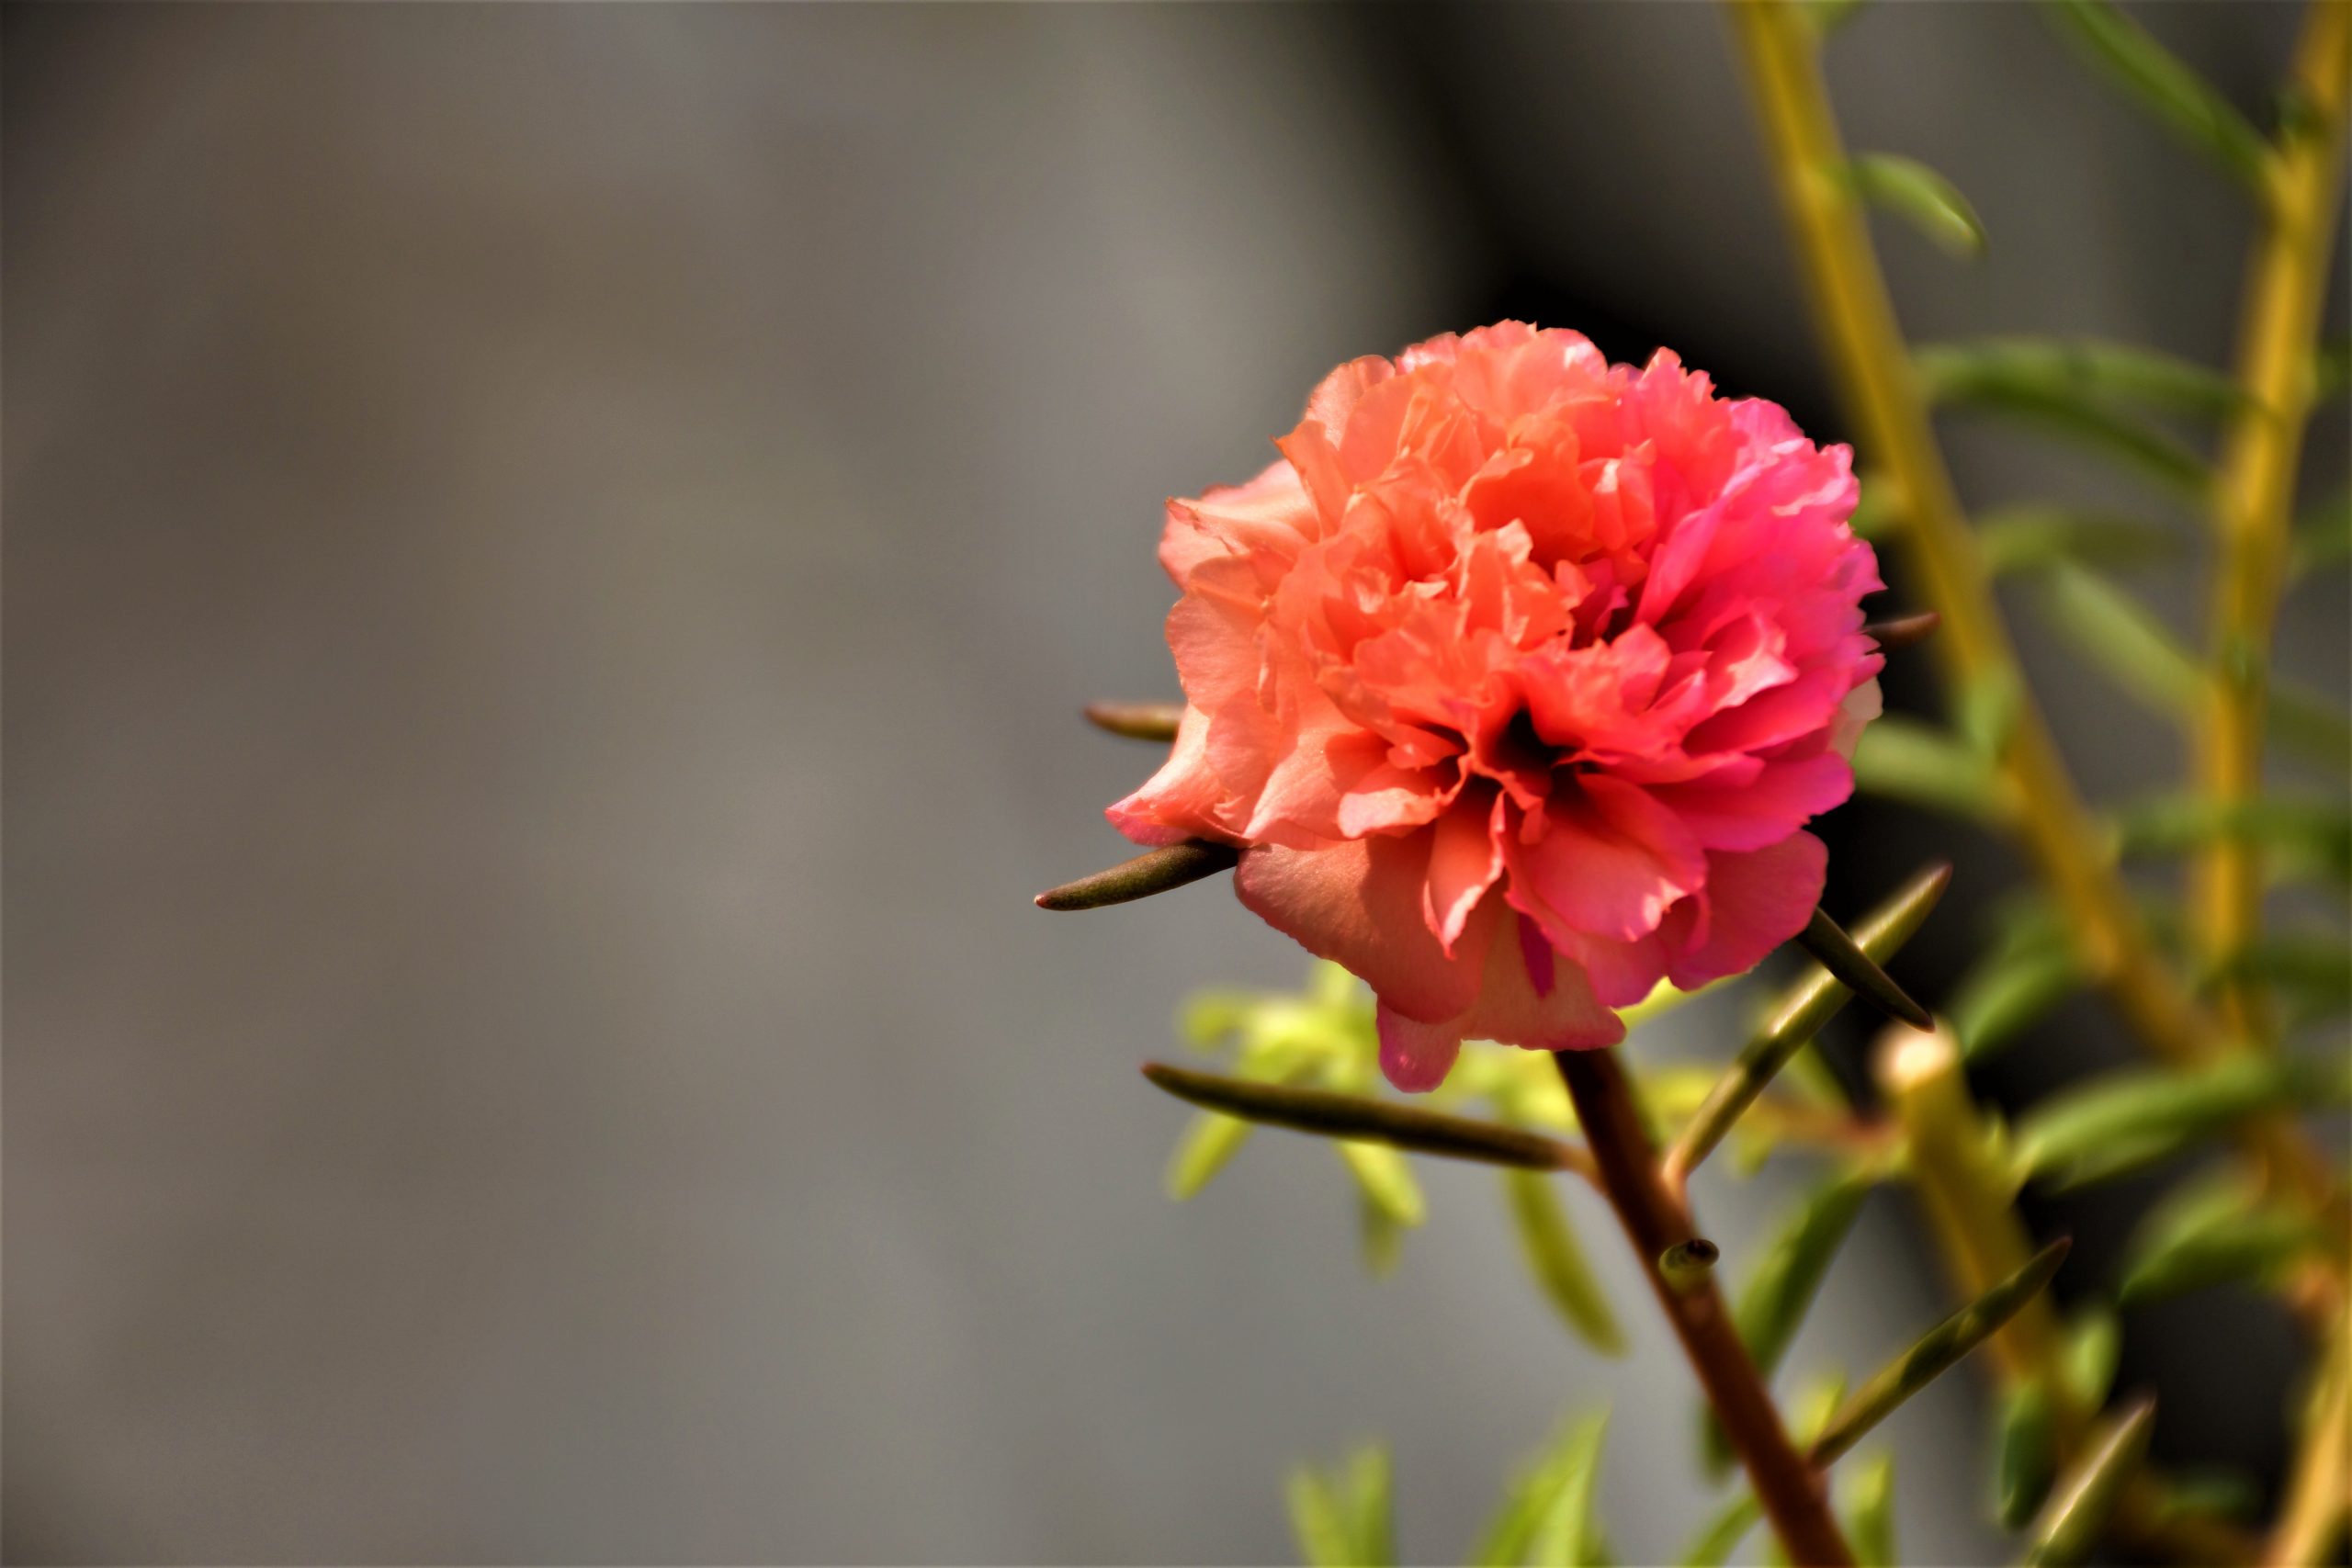 A peach flower